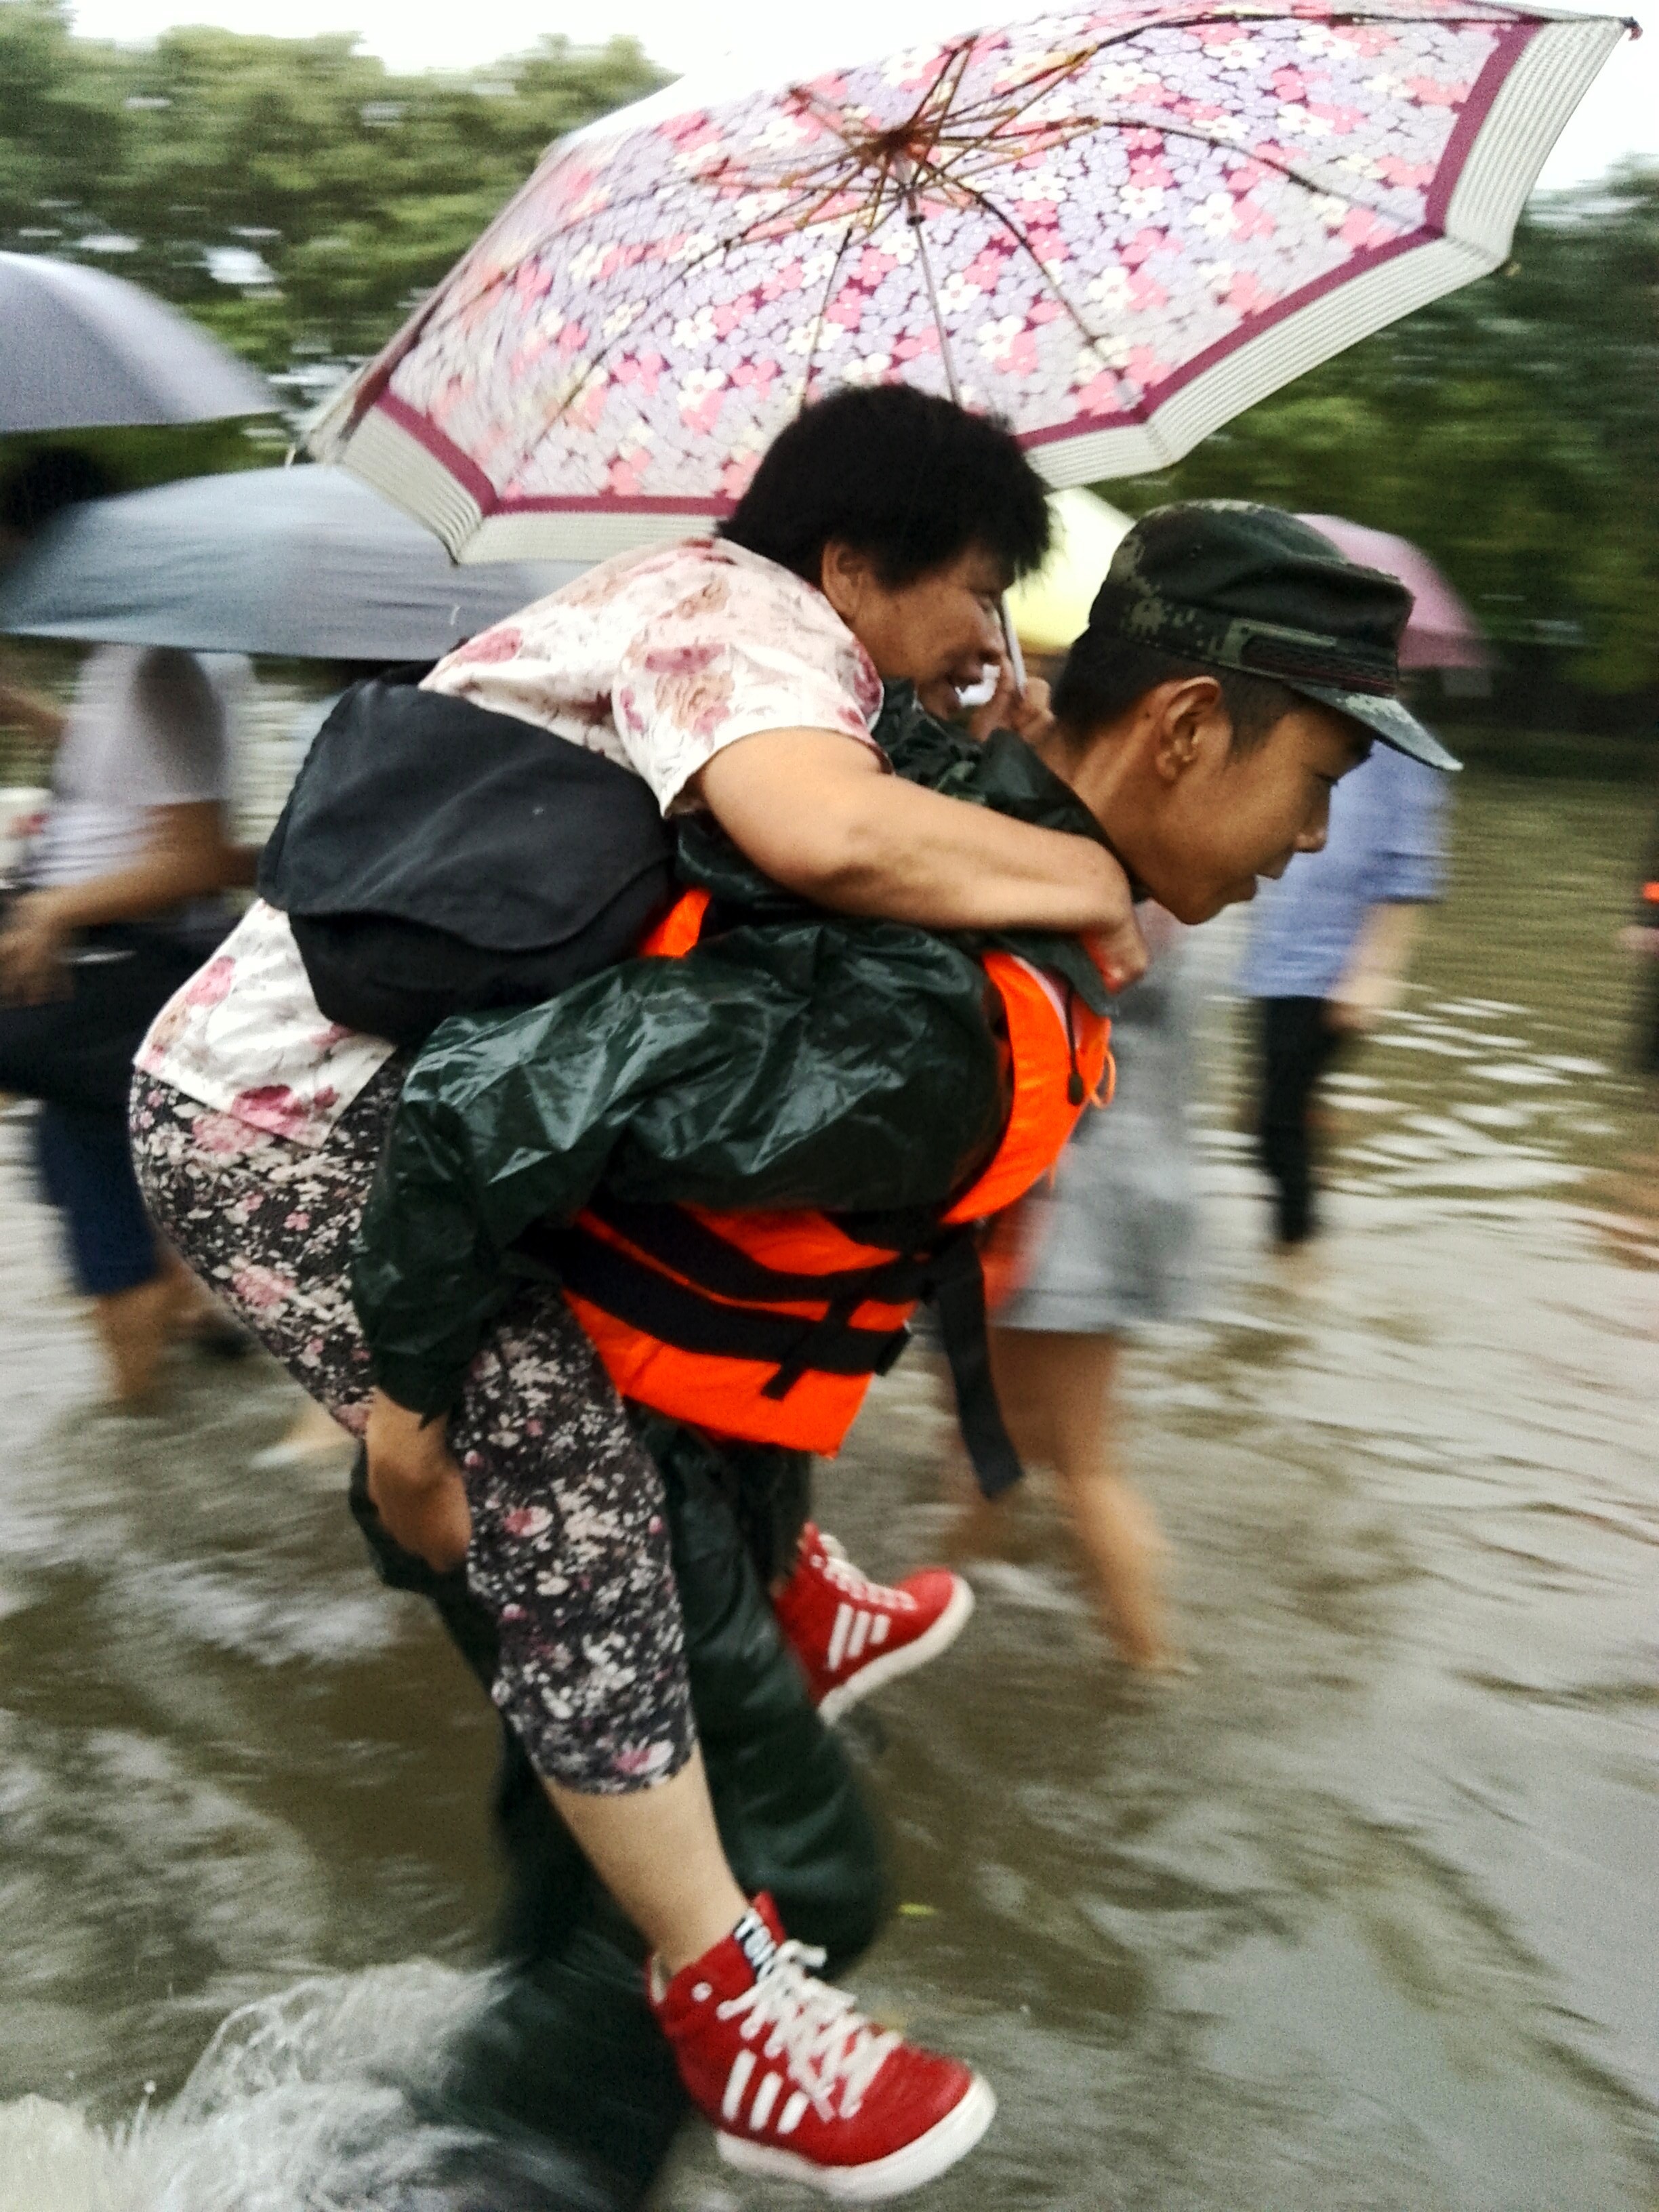 武警北京总队官兵帮助行动不便的行人通过复杂水路段。焦一鸣摄